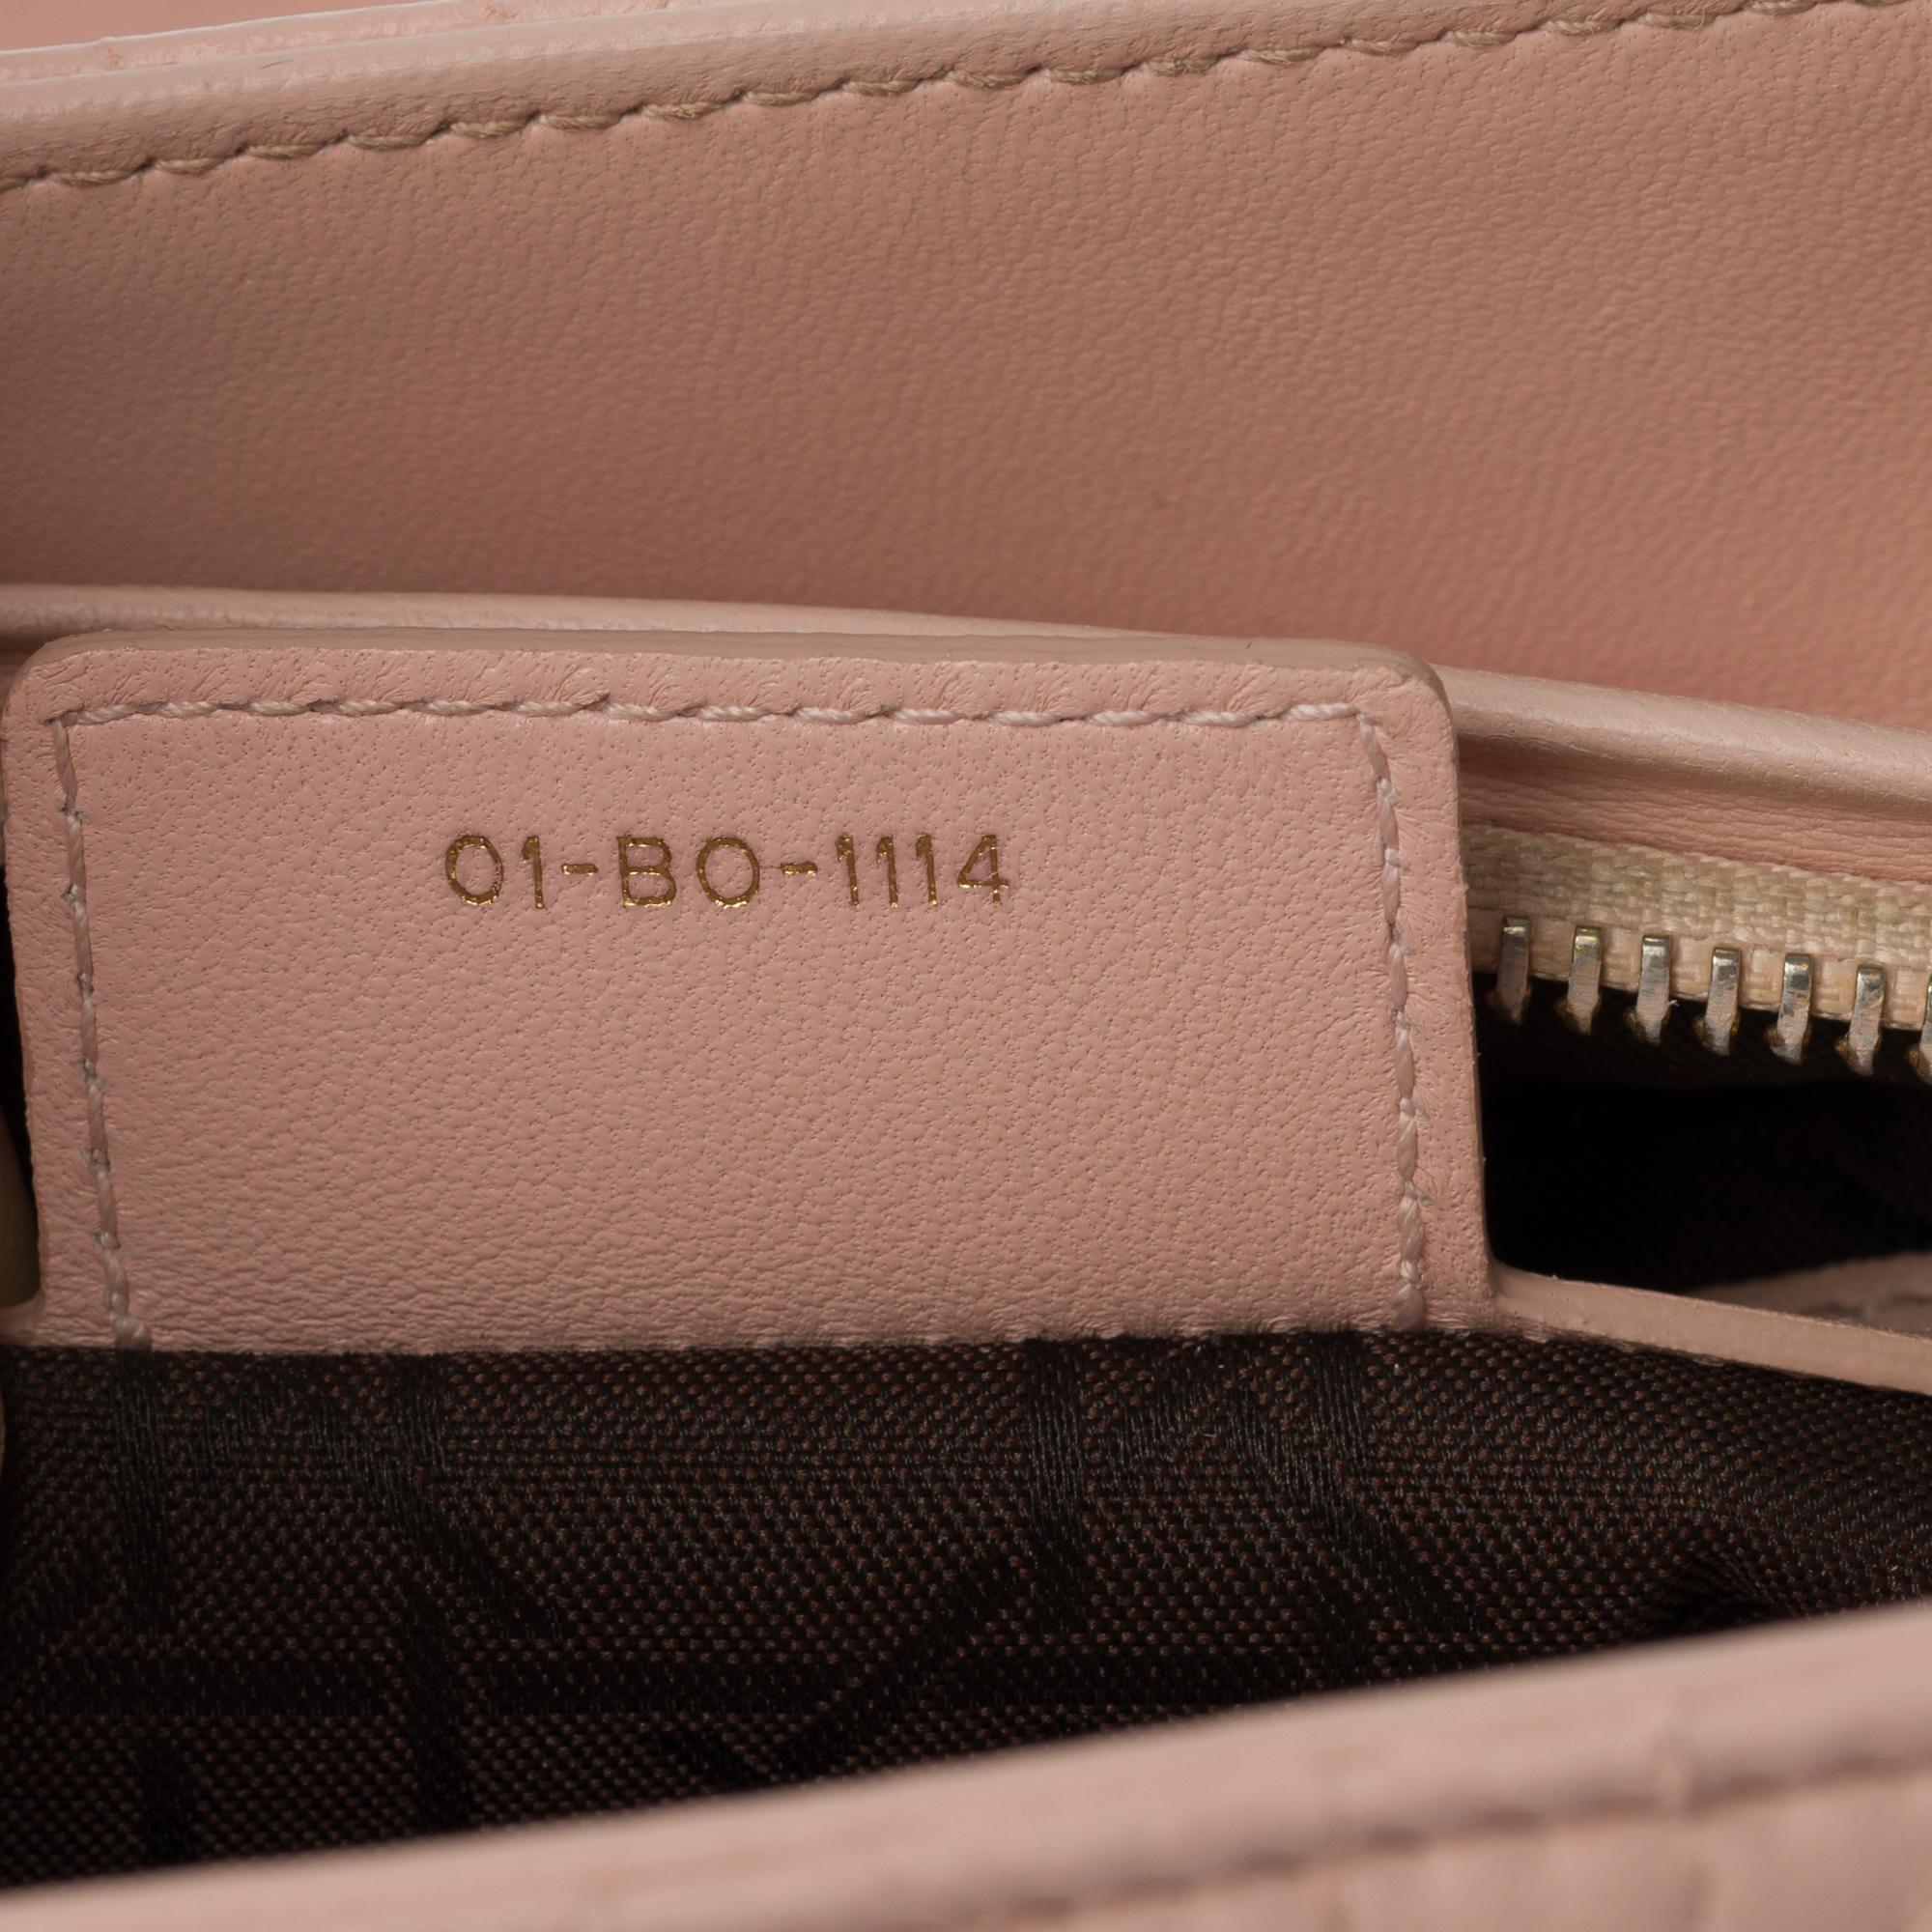 Beige  Christian Dior Lady Dior Medium size handbag in Pink cannage leather, GHW